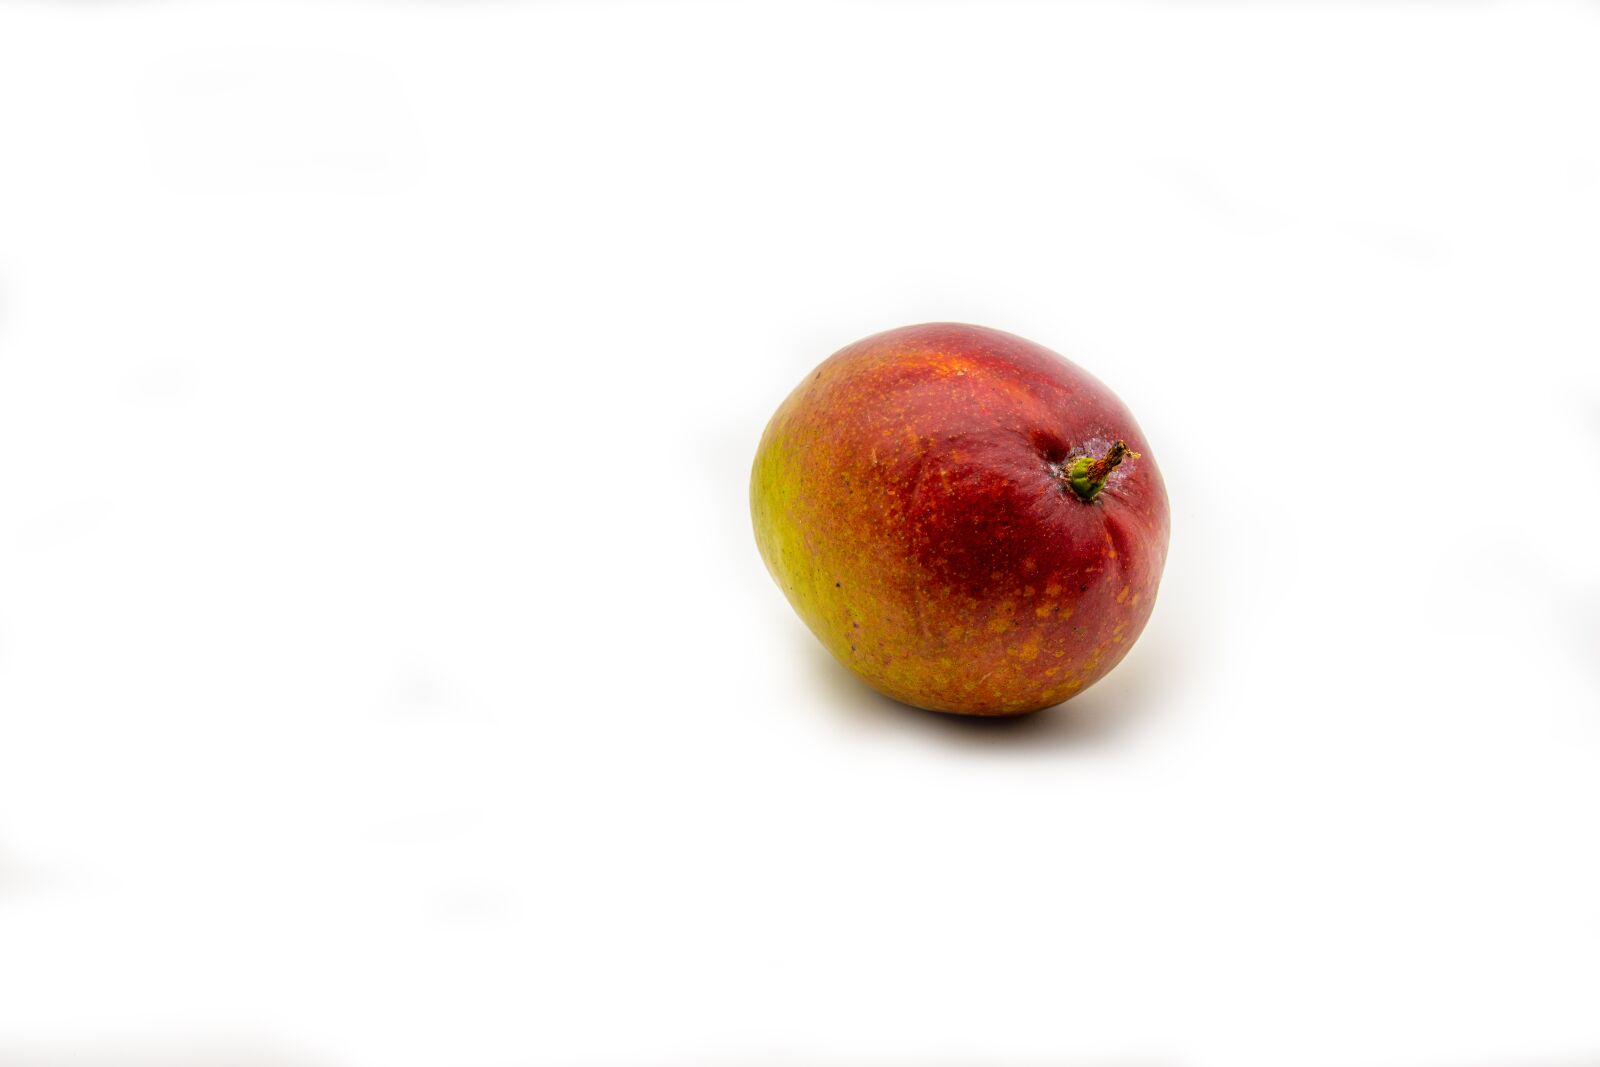 Sony SLT-A68 sample photo. Mango, fruit, ripe photography